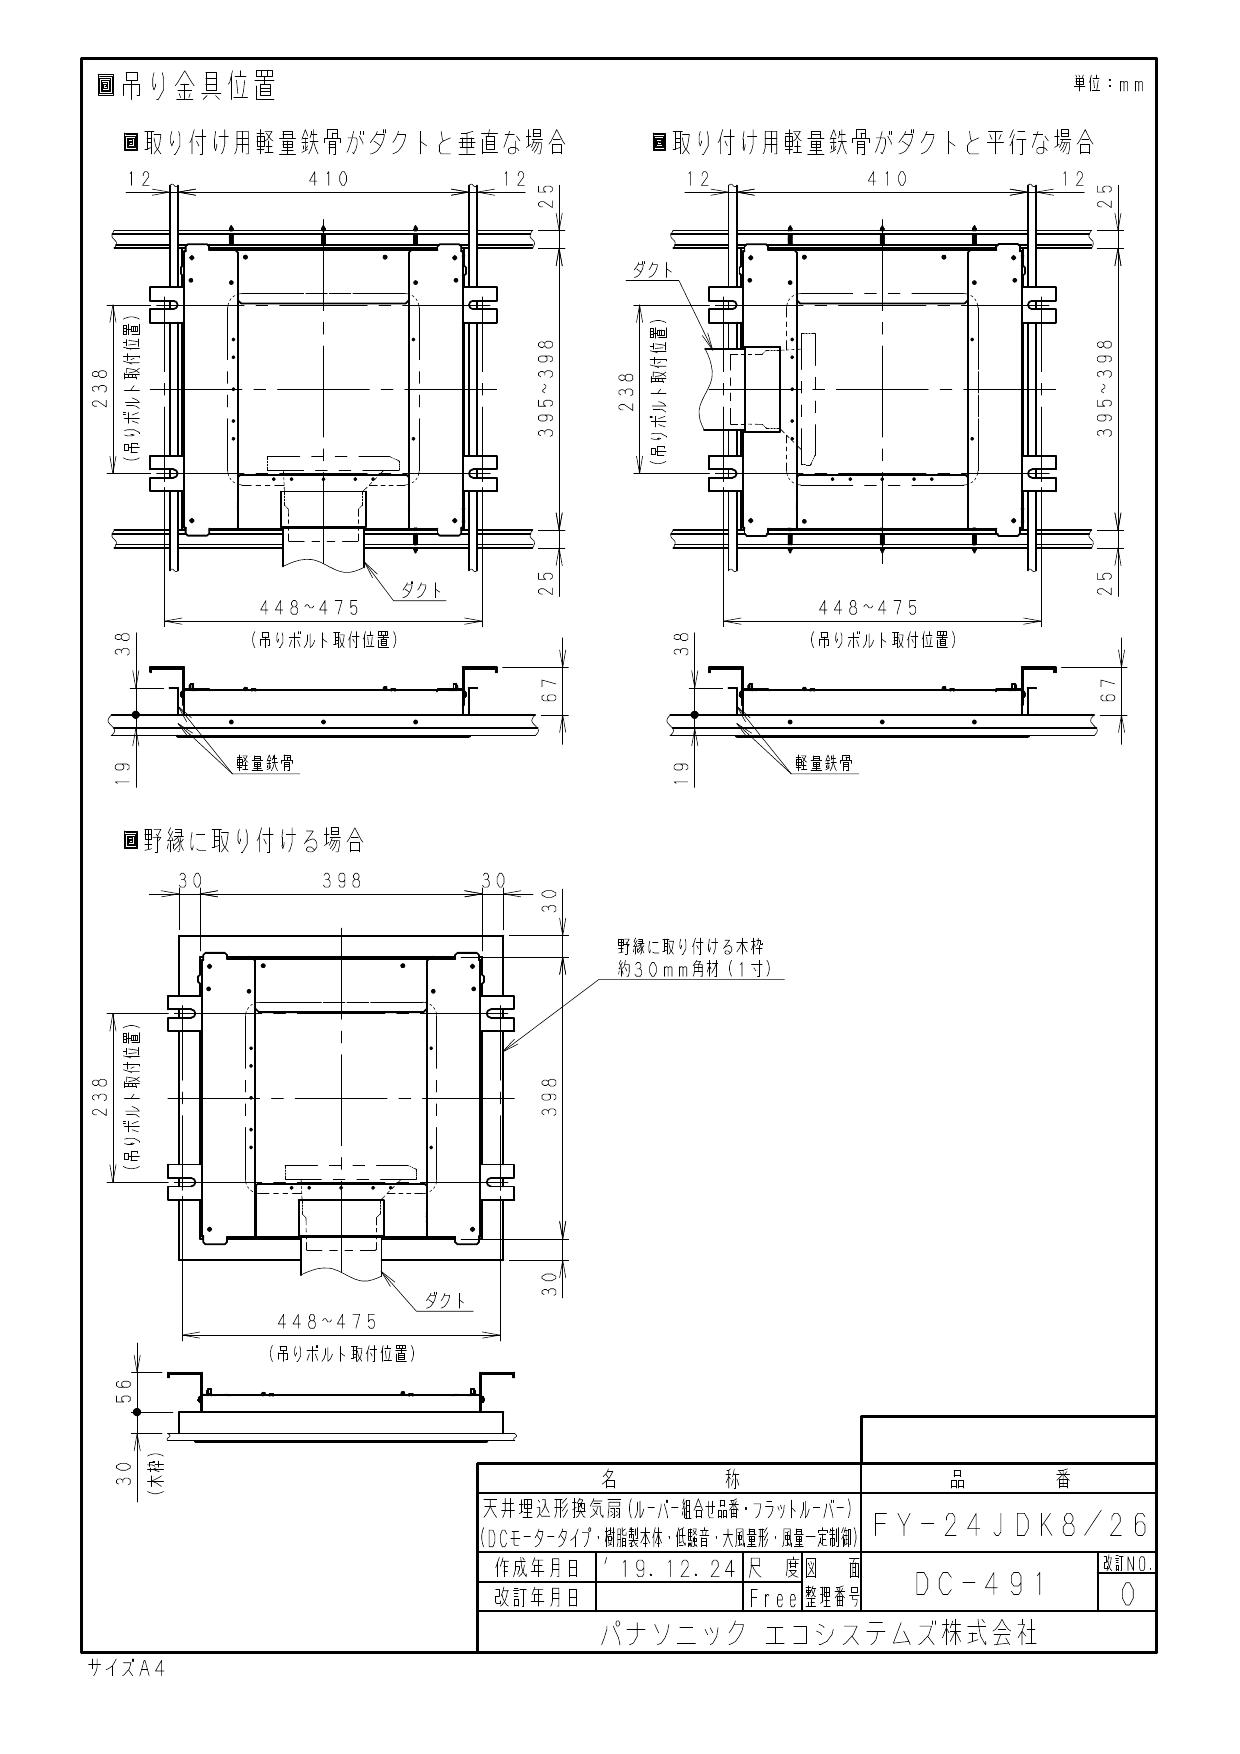 新品日本製 XFY-24JDK8/26Panasonic 天井埋込形換気扇＜DCモーター＞ ルーバー組合せ品番(フルフラット ホワイト) 3段